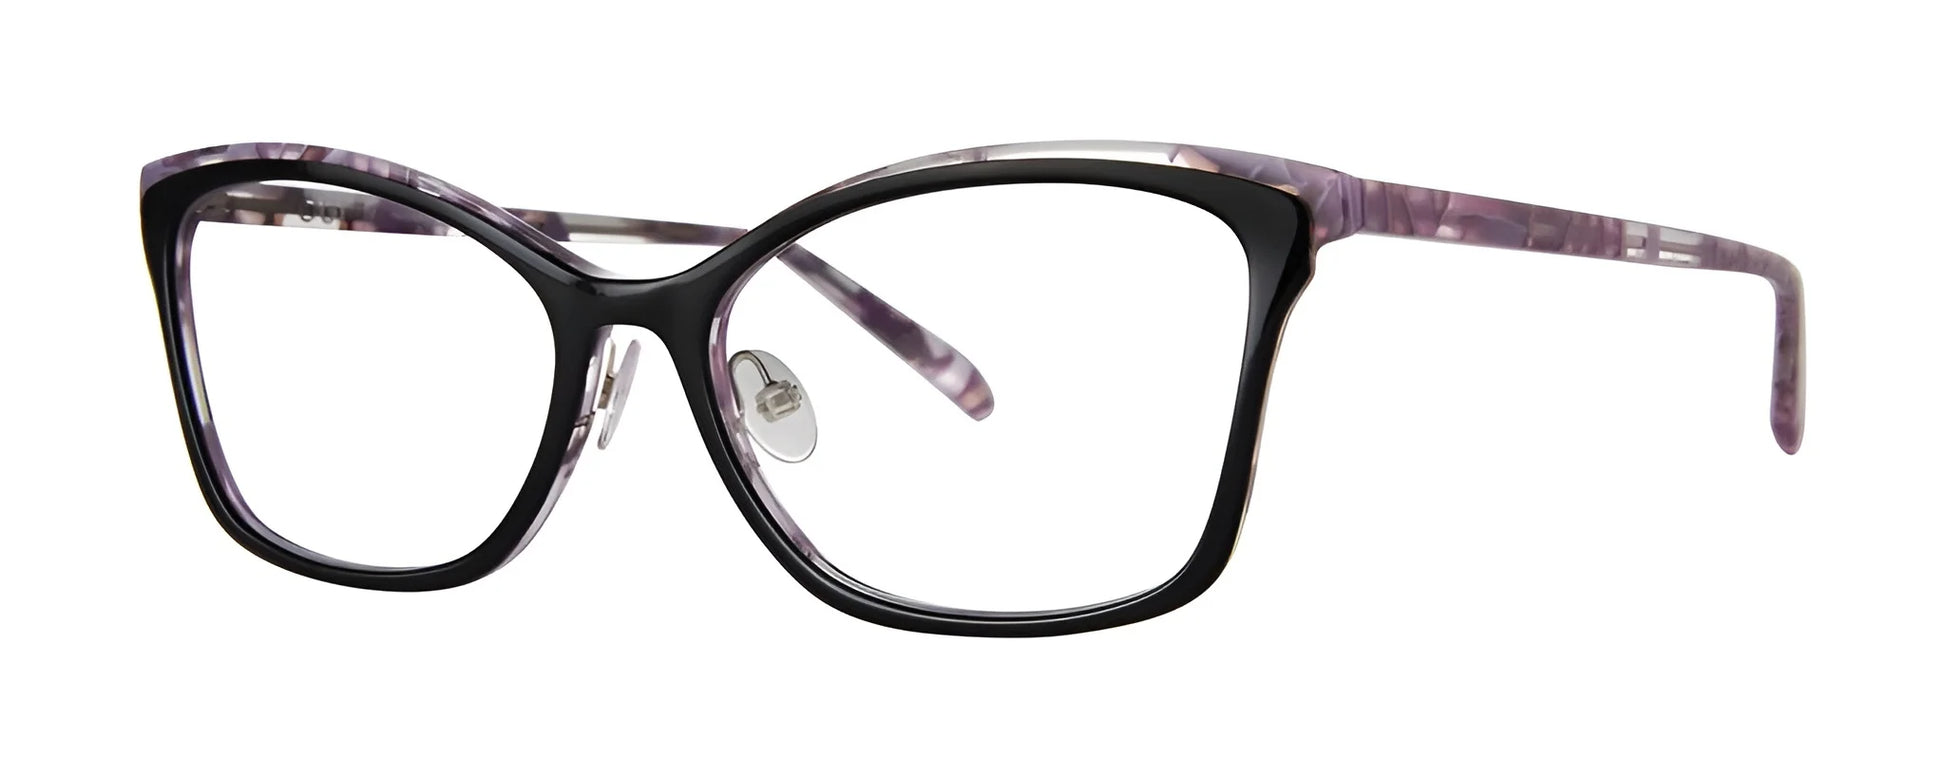 OGI LADY SLIPPER Eyeglasses Black Iris Festival